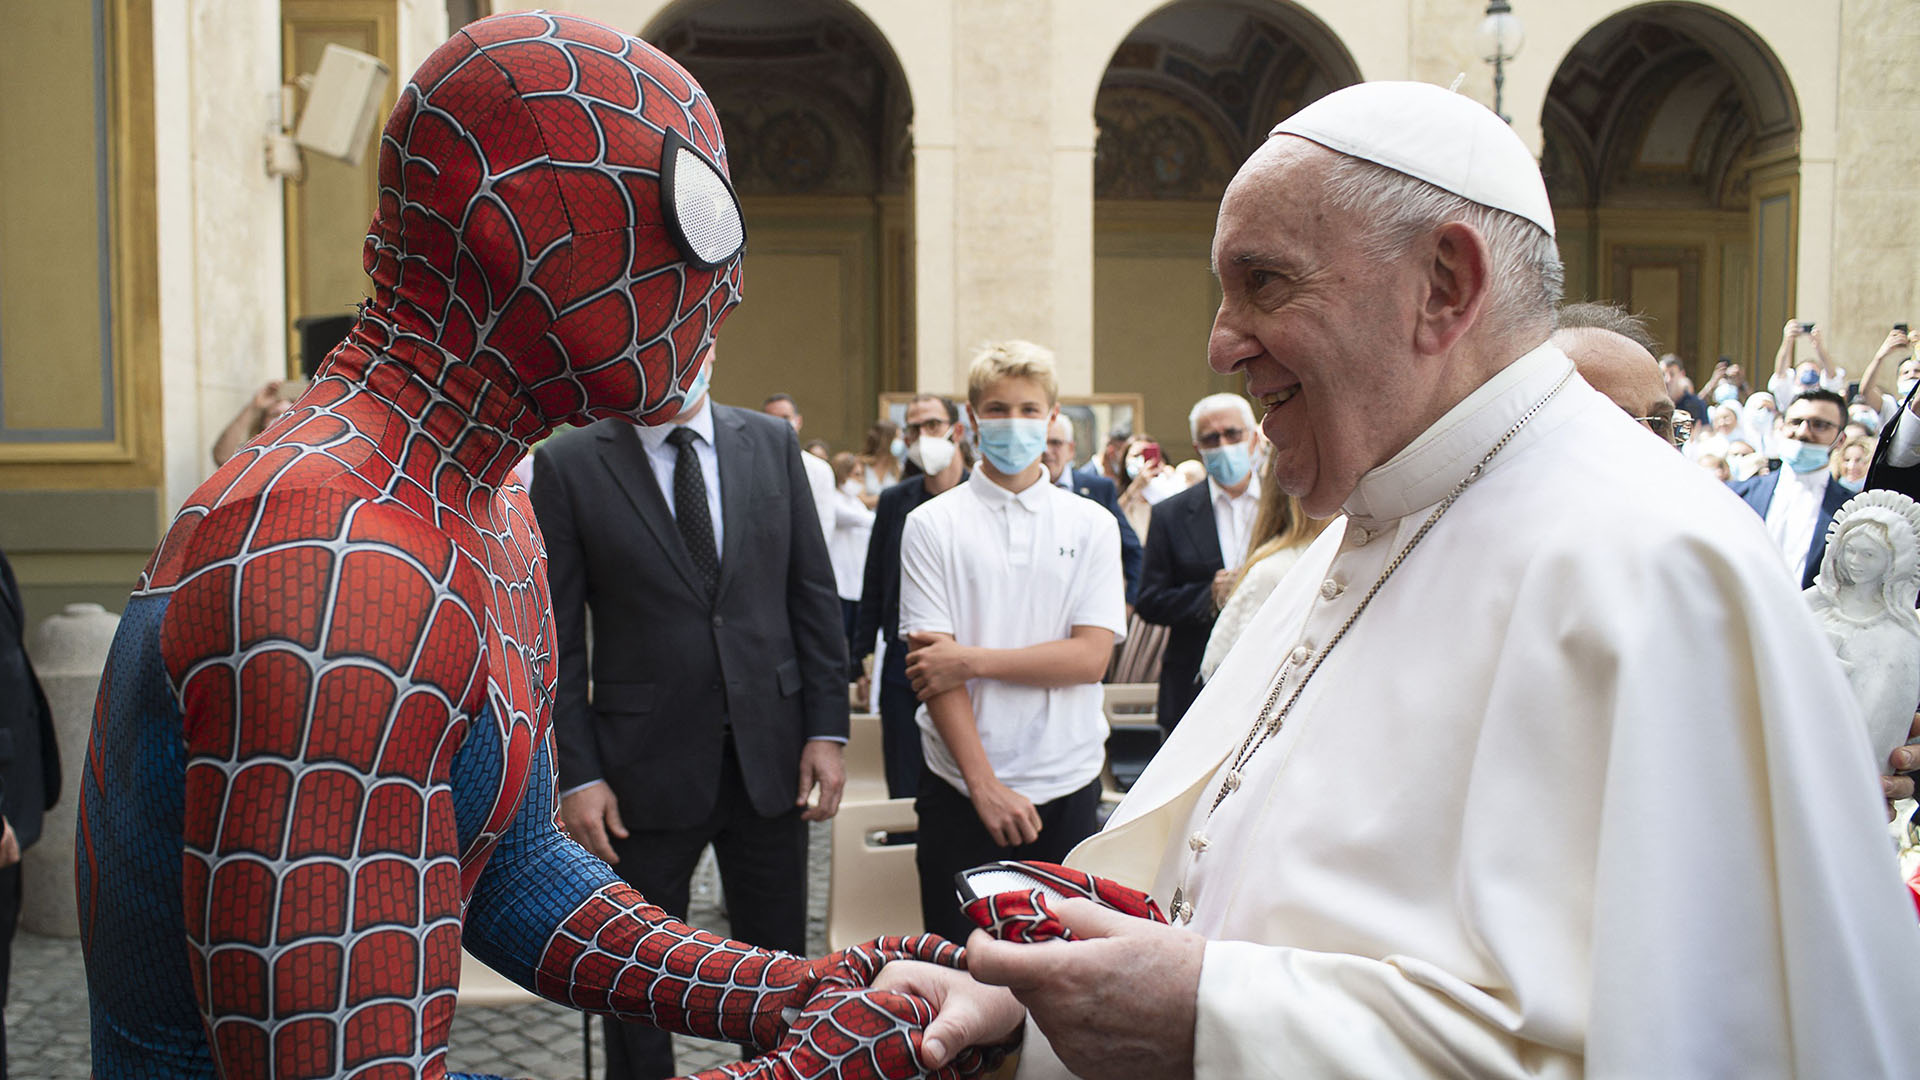 El papa Francisco recibió la visita inesperada de Spiderman - Infobae